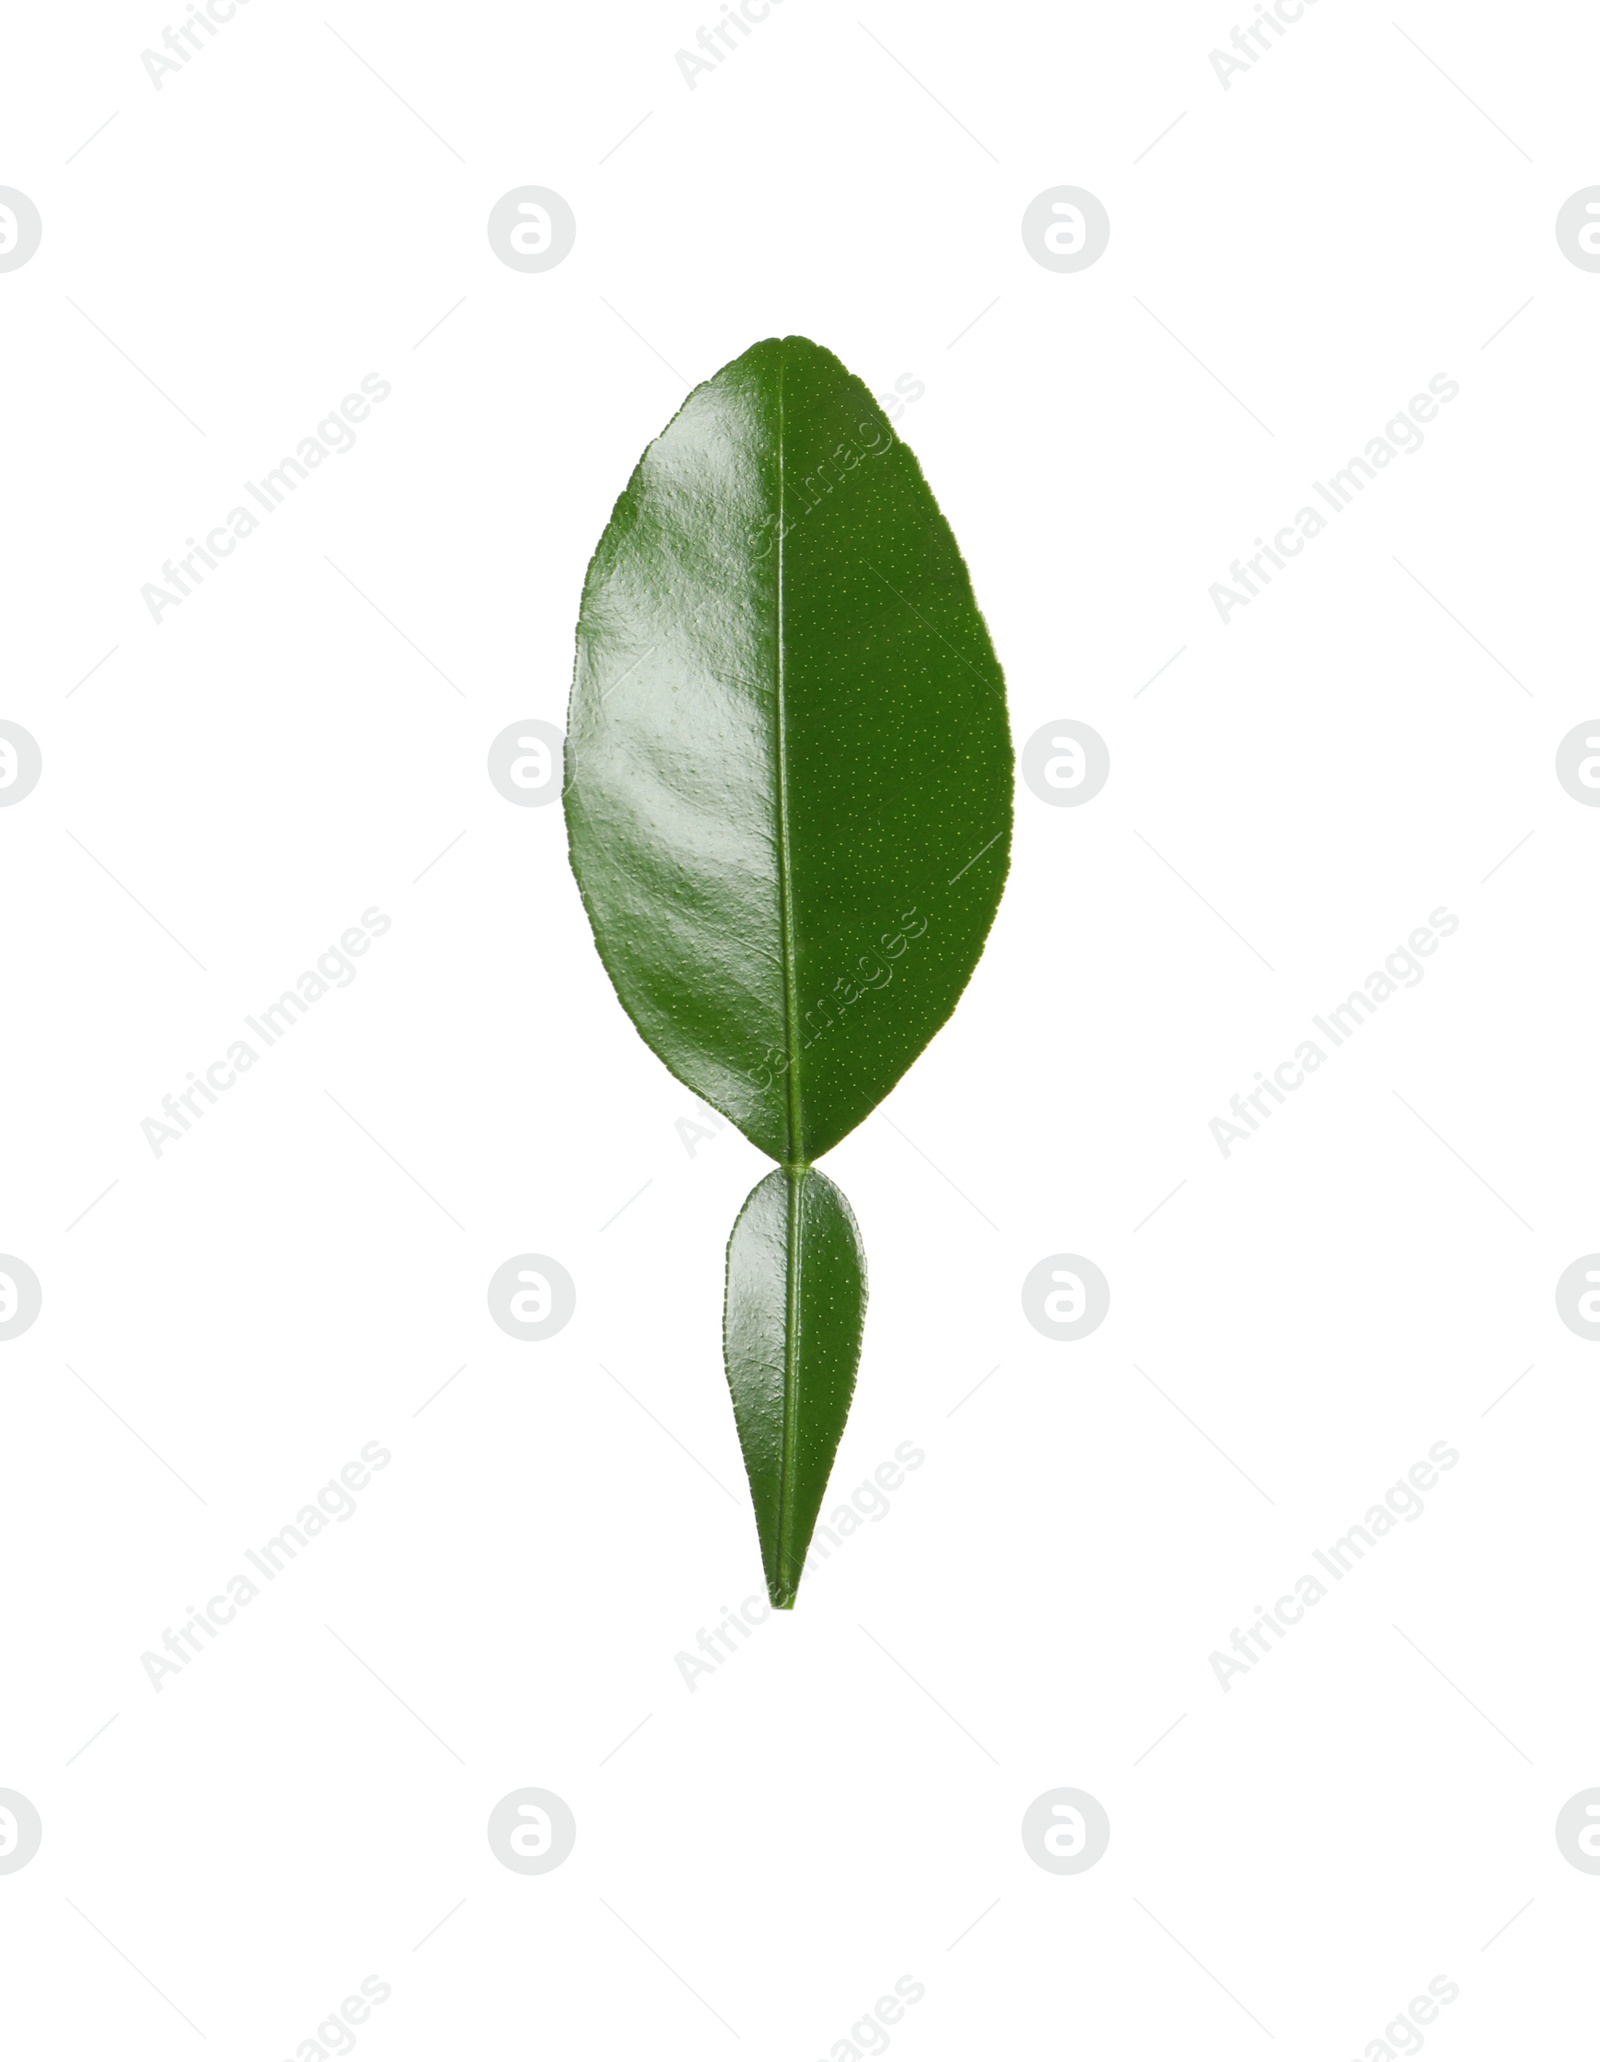 Photo of Green leaf of bergamot plant isolated on white